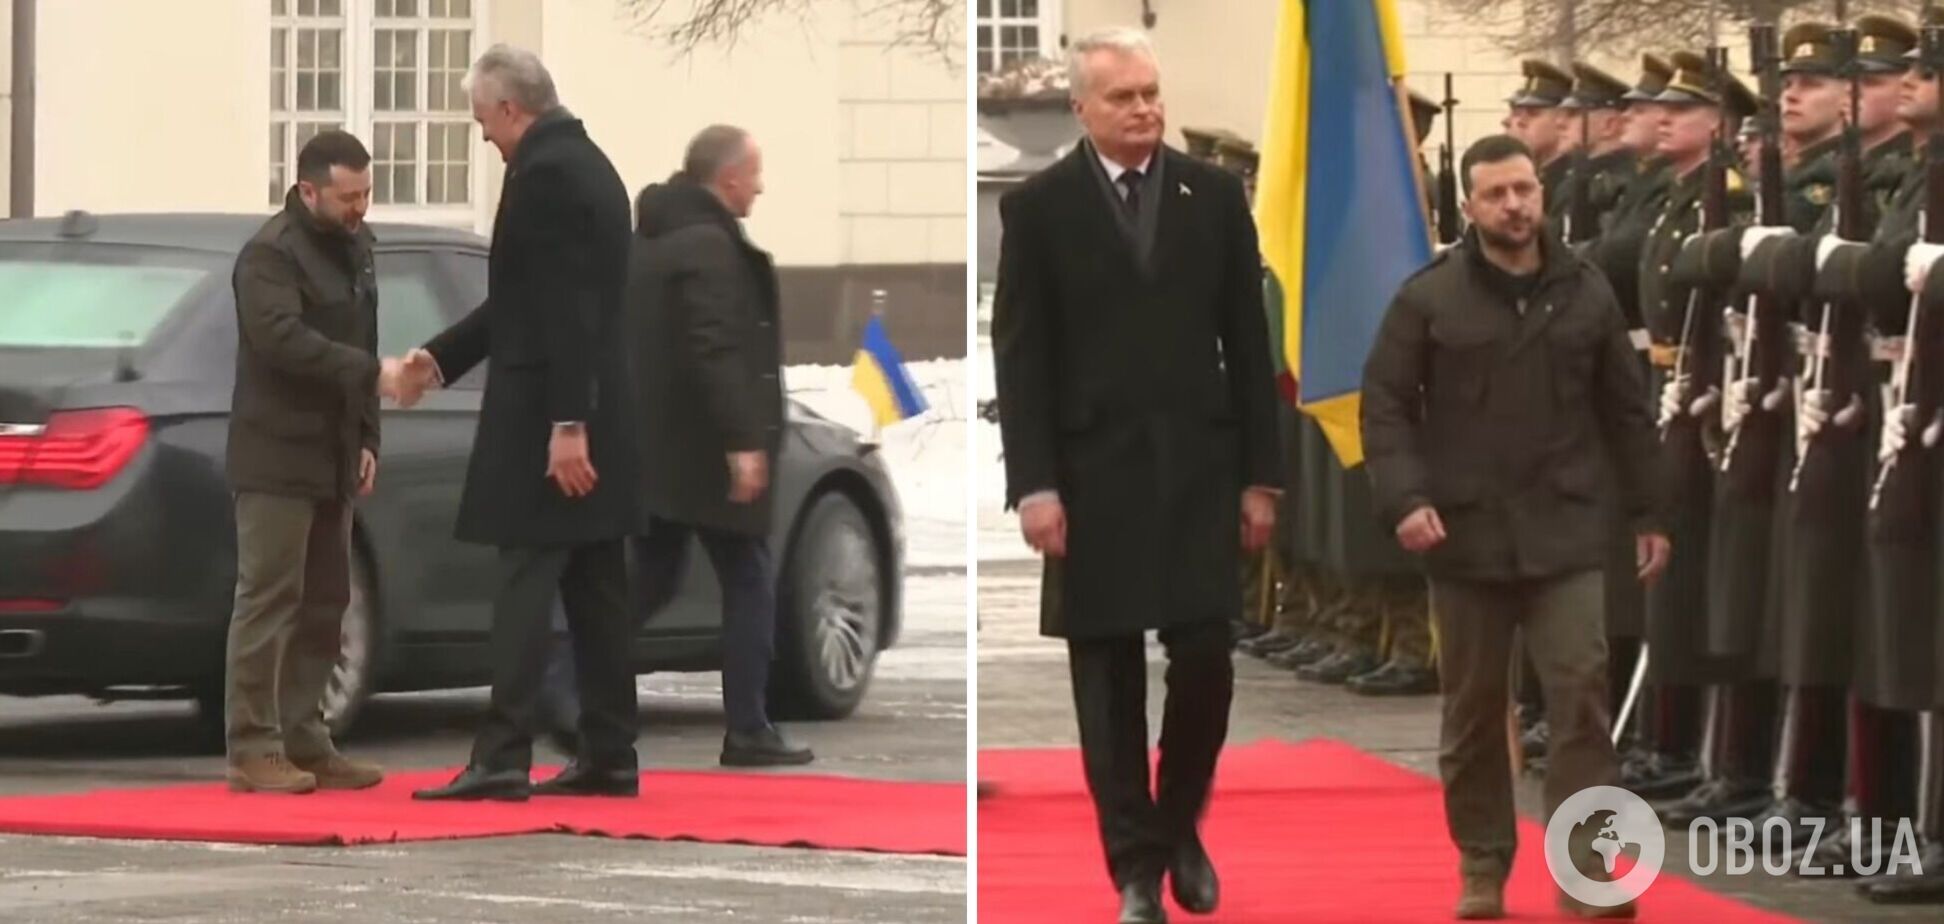 'Цей рік стане вирішальним': Зеленський у Вільнюсі провів переговори з Науседою, Україна отримає важливу допомогу. Подробиці